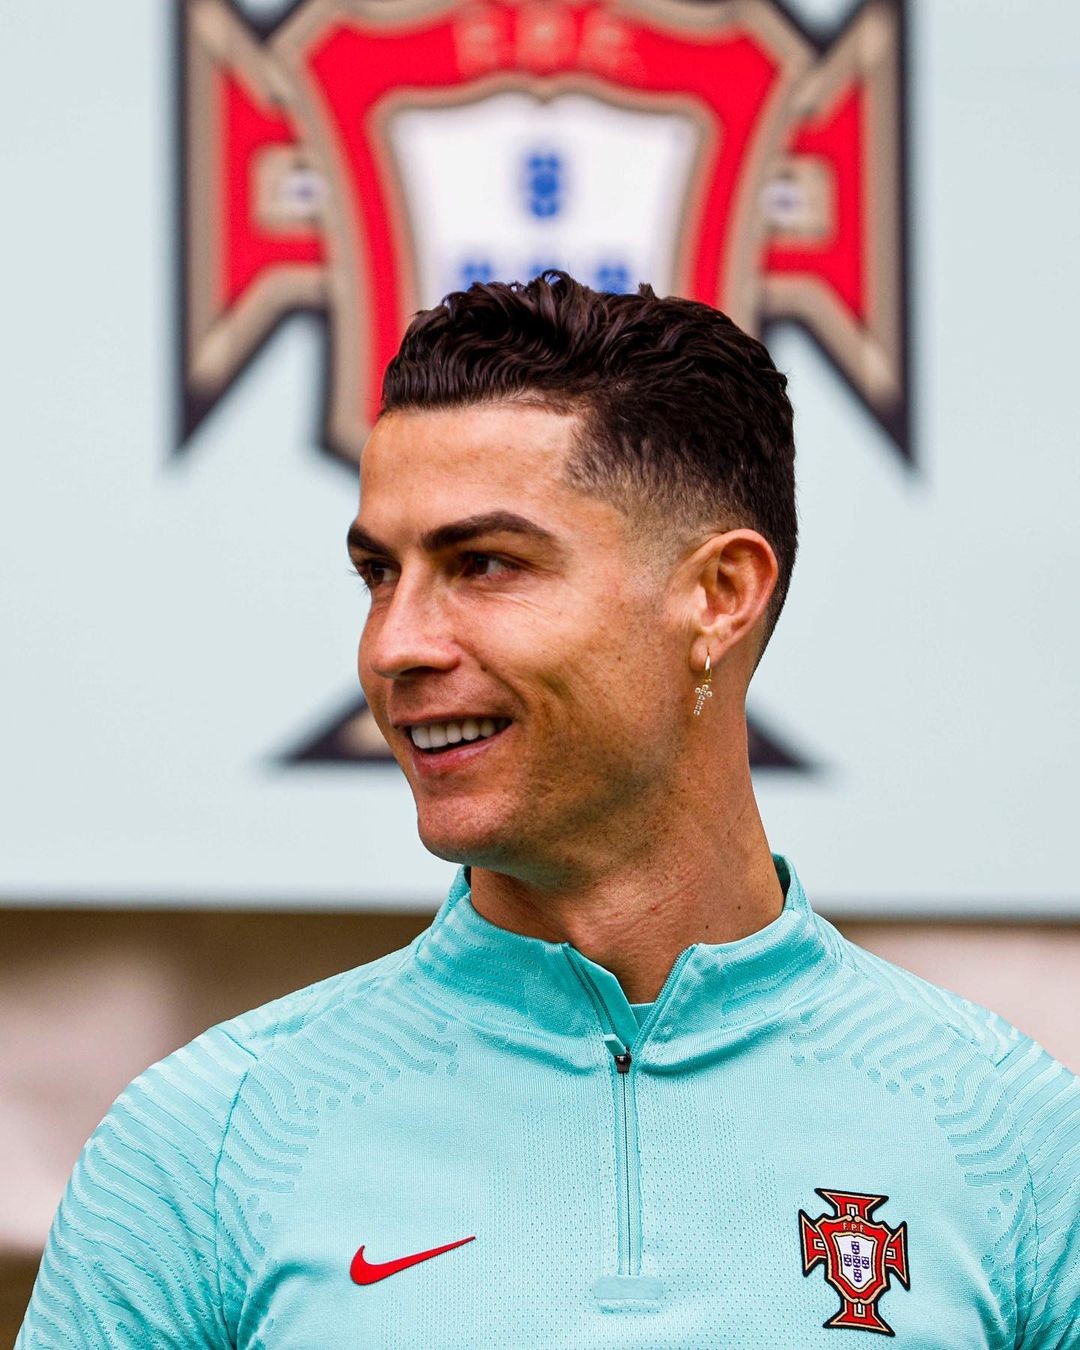 Cristiano Ronaldo compartilha foto com uniforme da seleção de Portugal (Foto: Reprodução/Instagram)